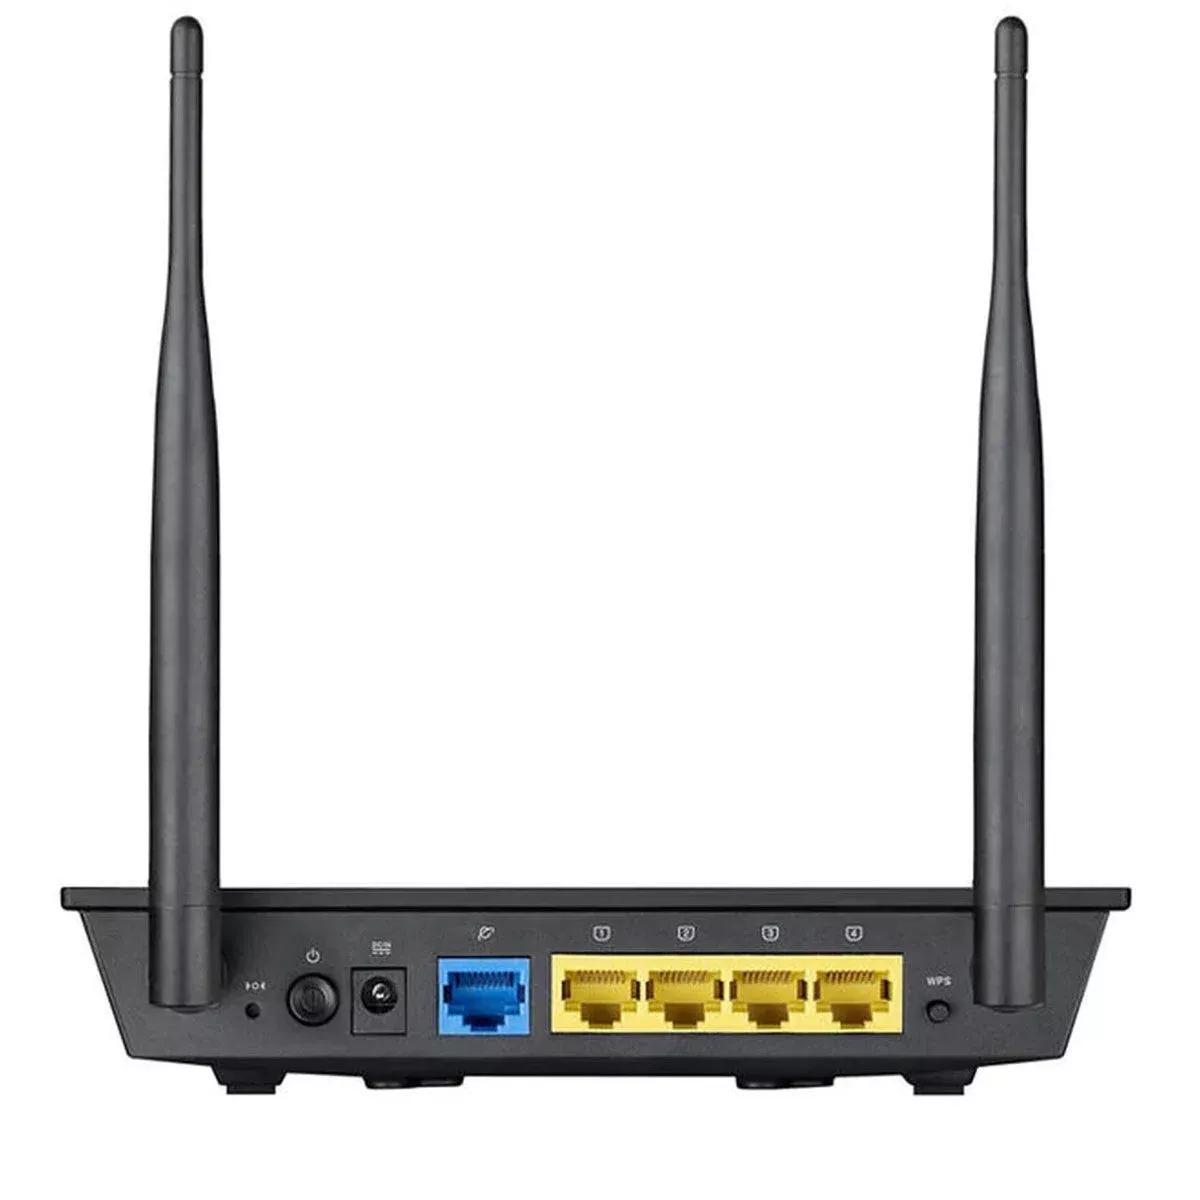 ASUS RT-N12+ Wi-Fi Router - Dual Antenna, Up to 300 Mbps, 4 LAN ports